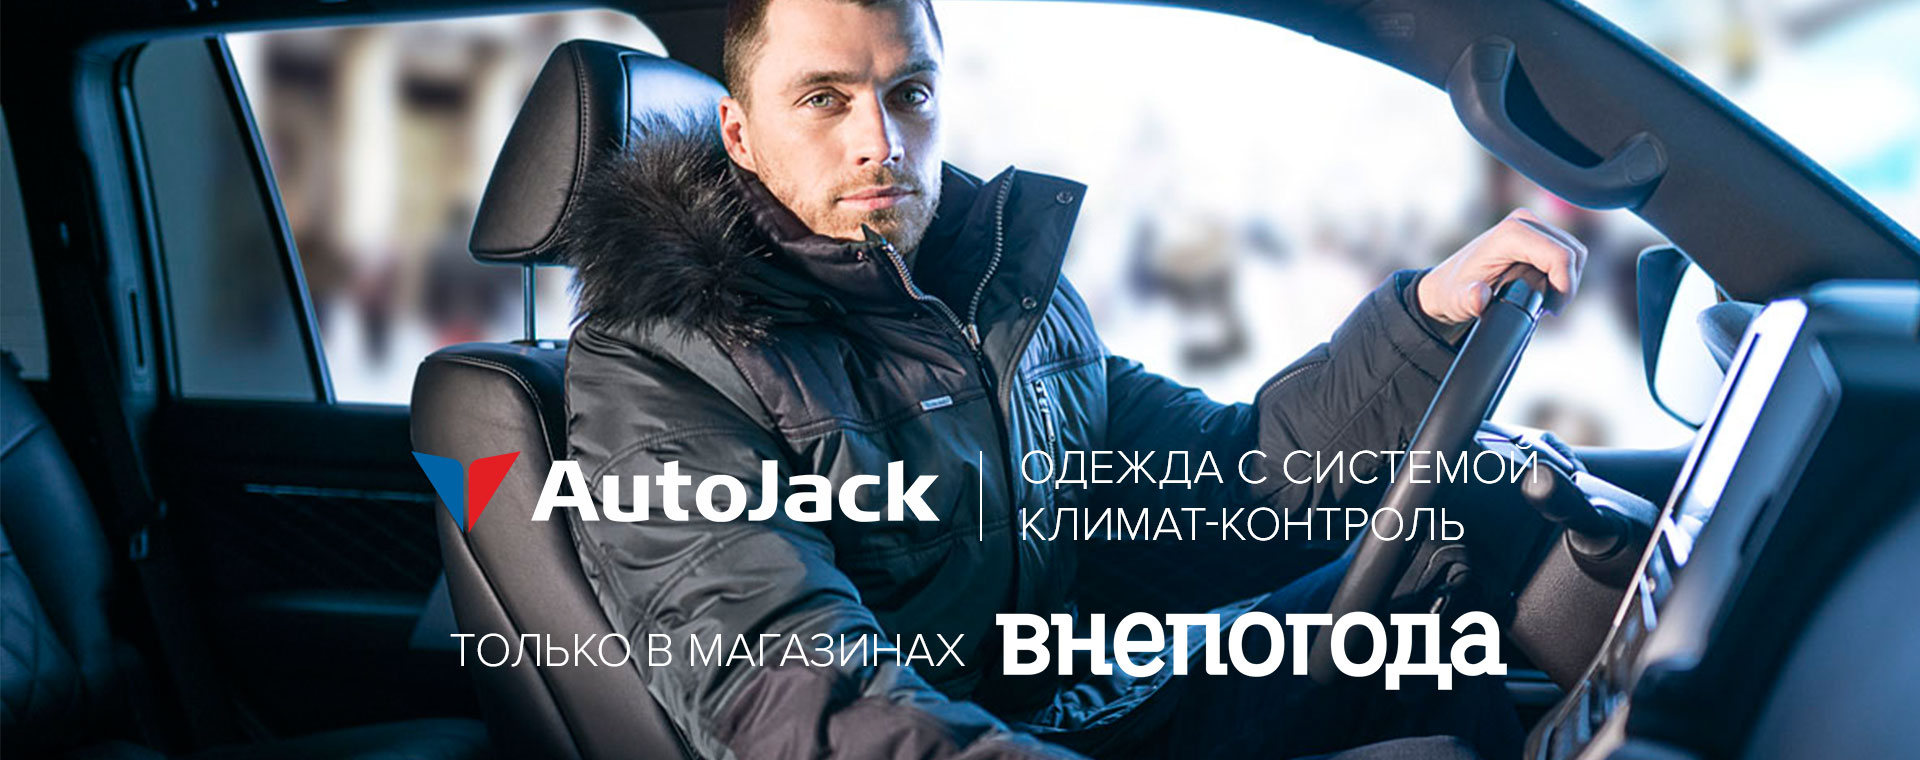 AutoJack - Одежда с системой климат-контроля